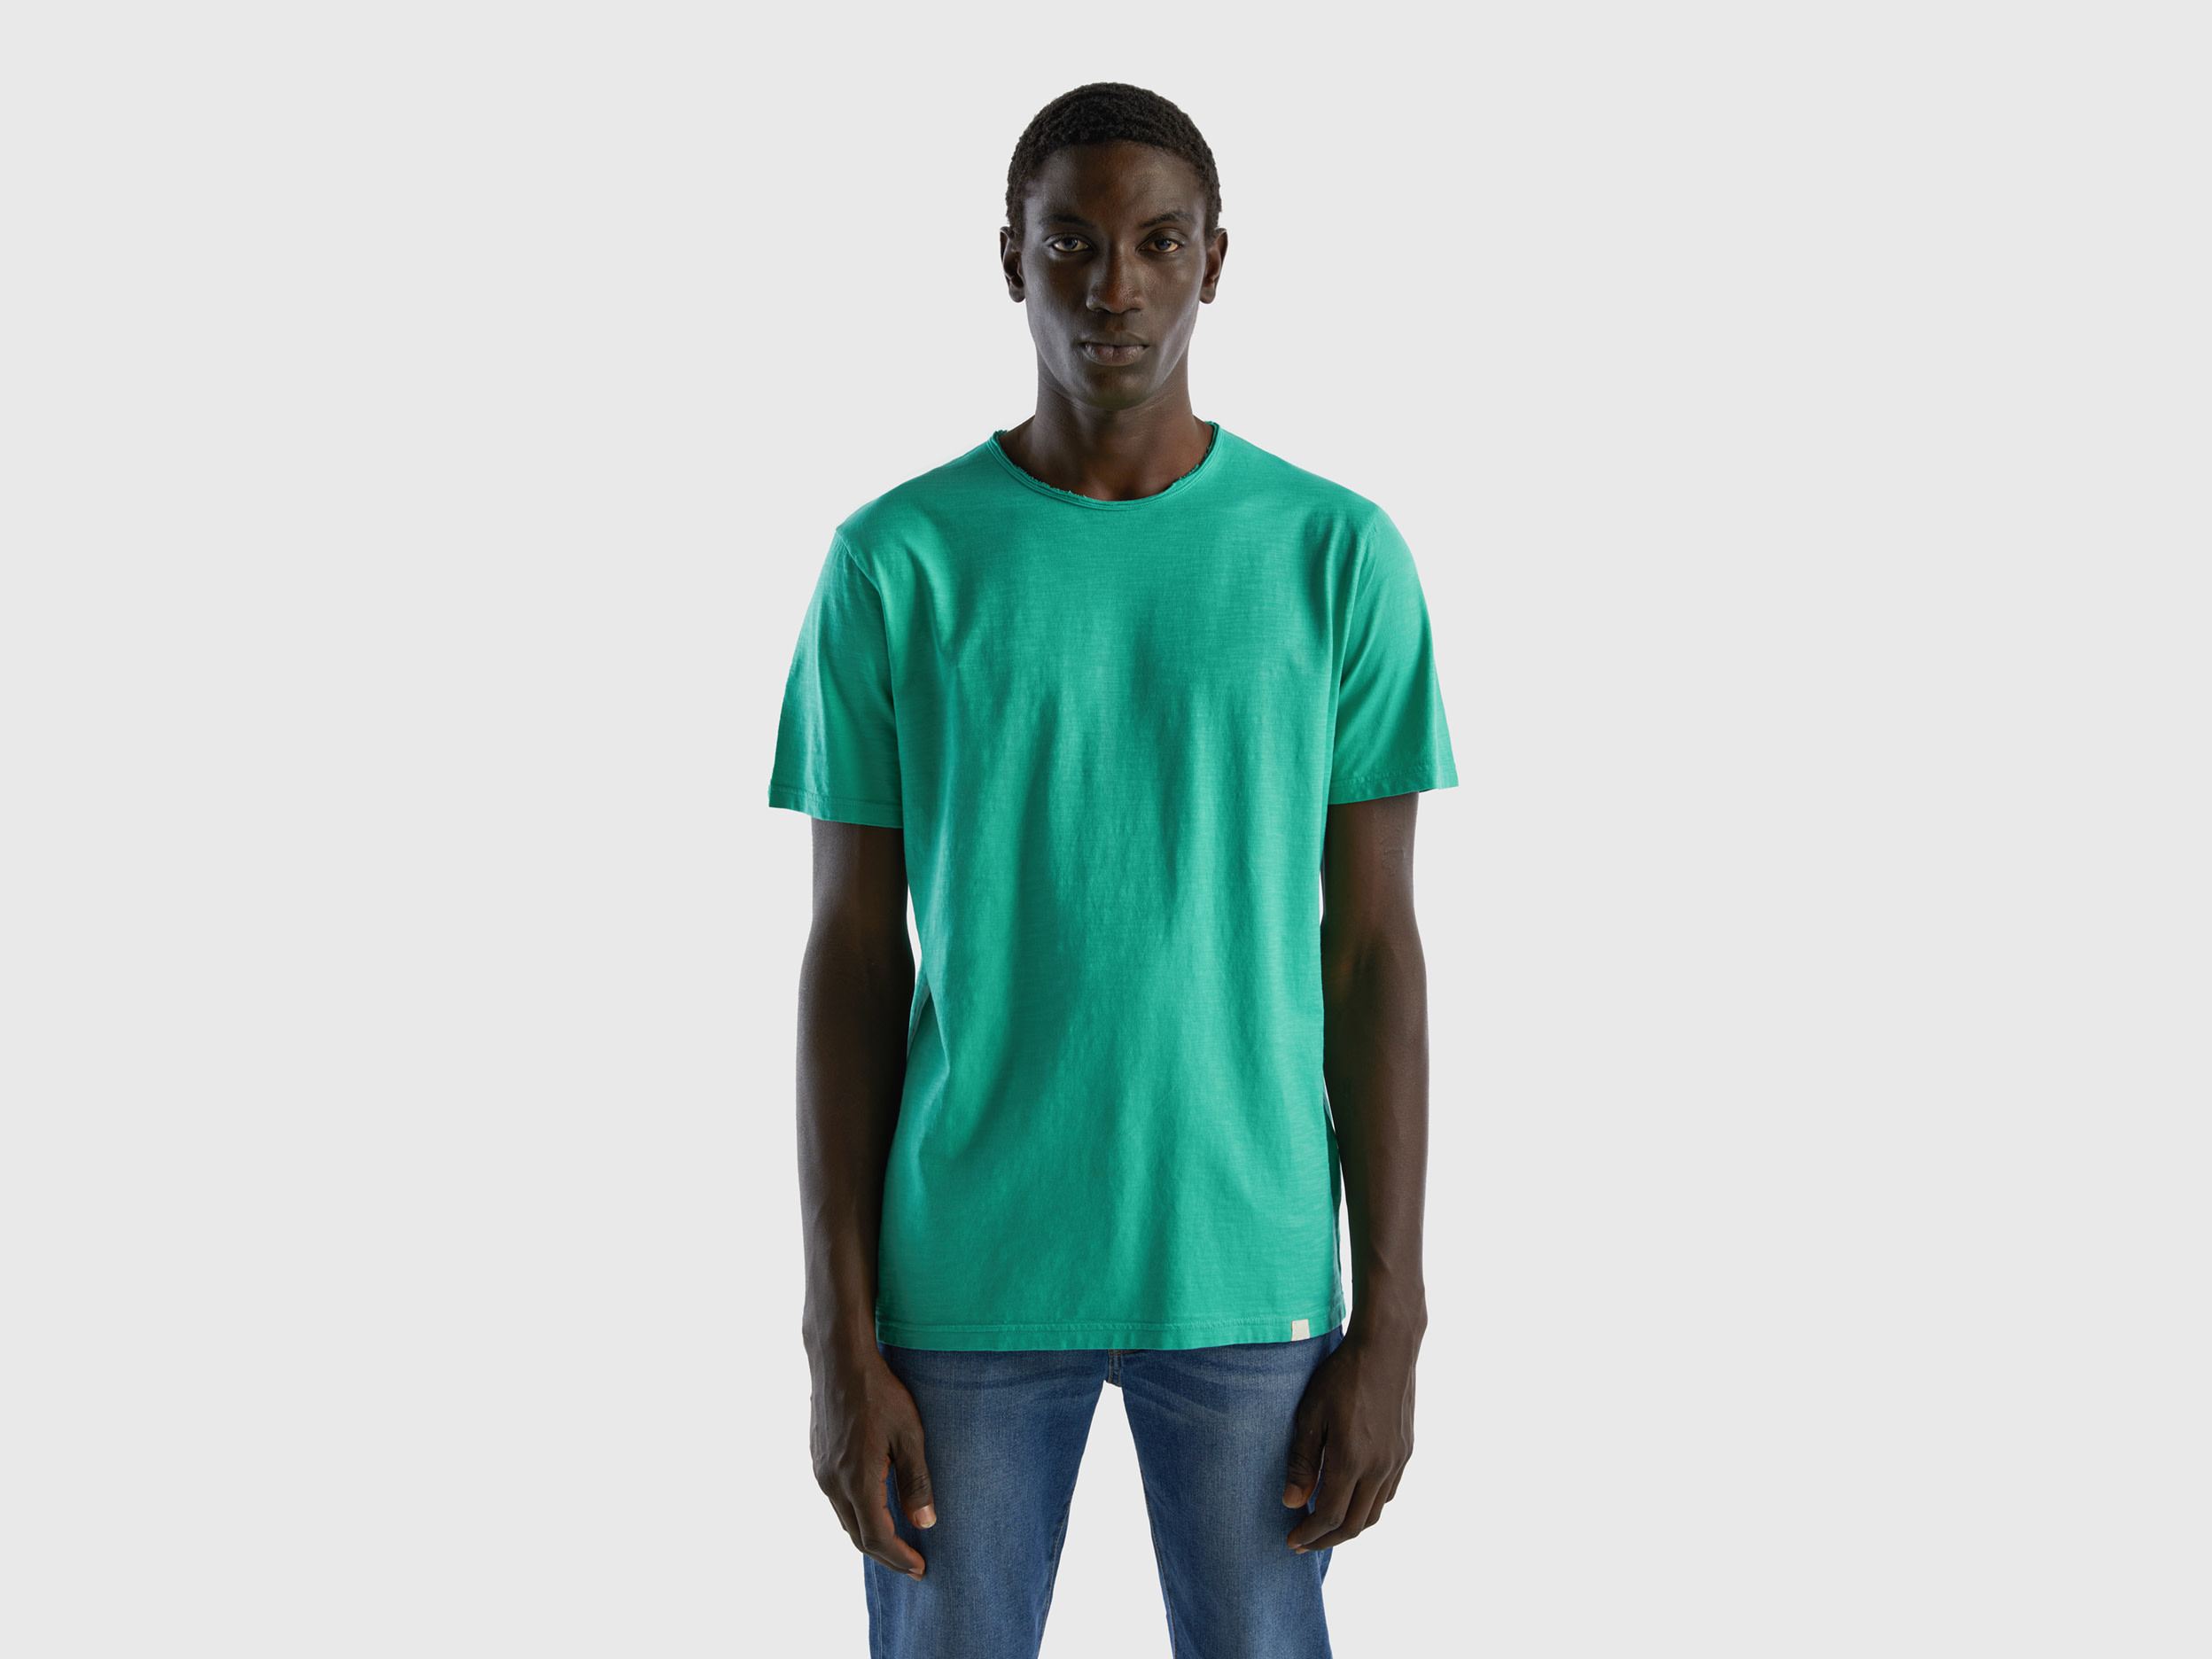 Benetton, T shirt Verde In Cotone Fiammato, Verde, Uomo